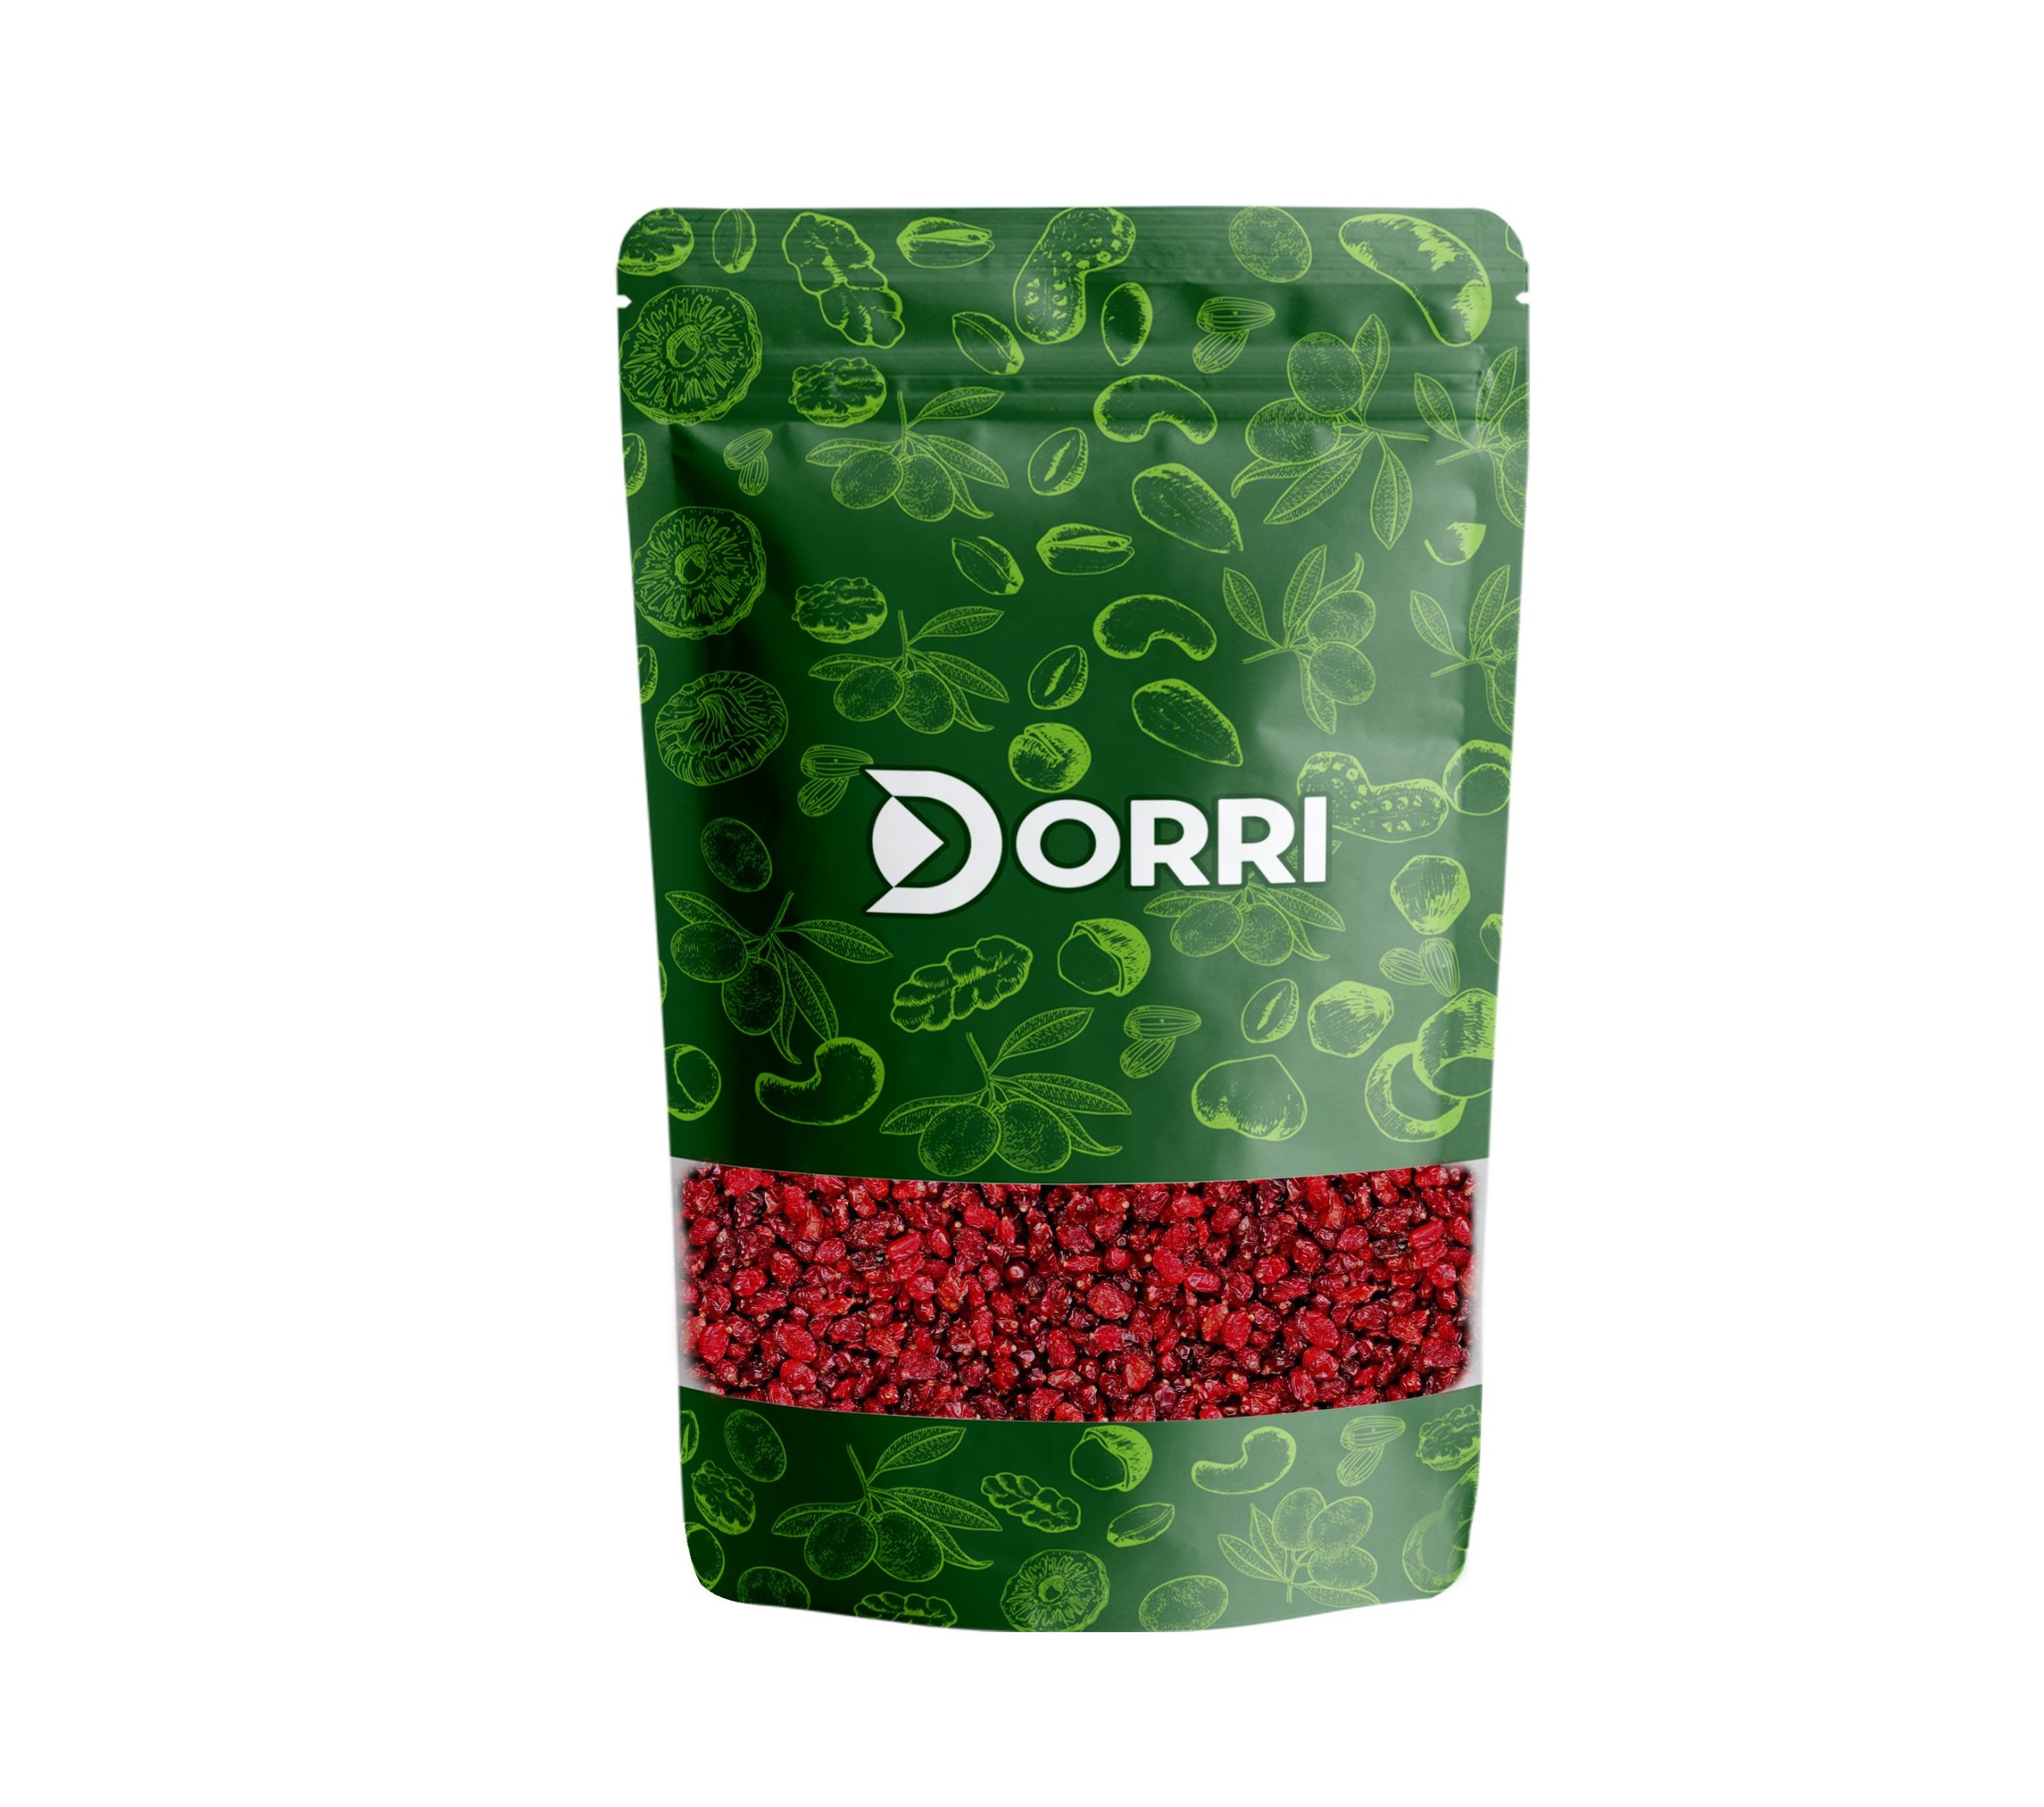 Dorri - Dried Barberries